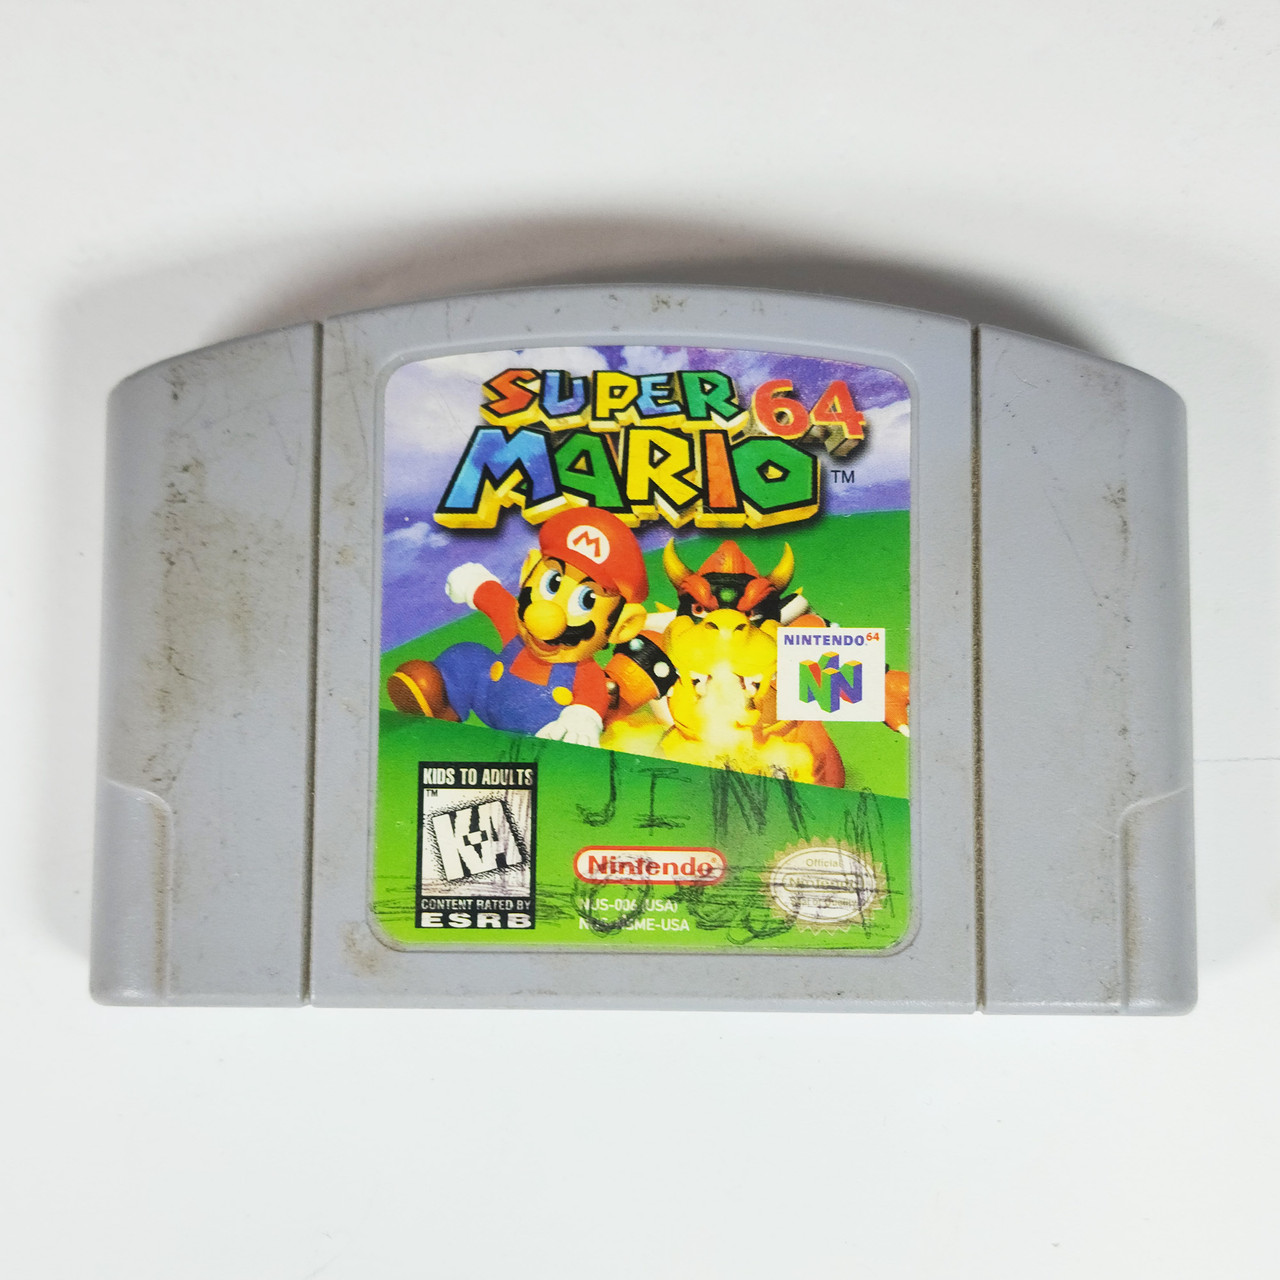 Super Mario 64 - Nintendo 64, Nintendo 64